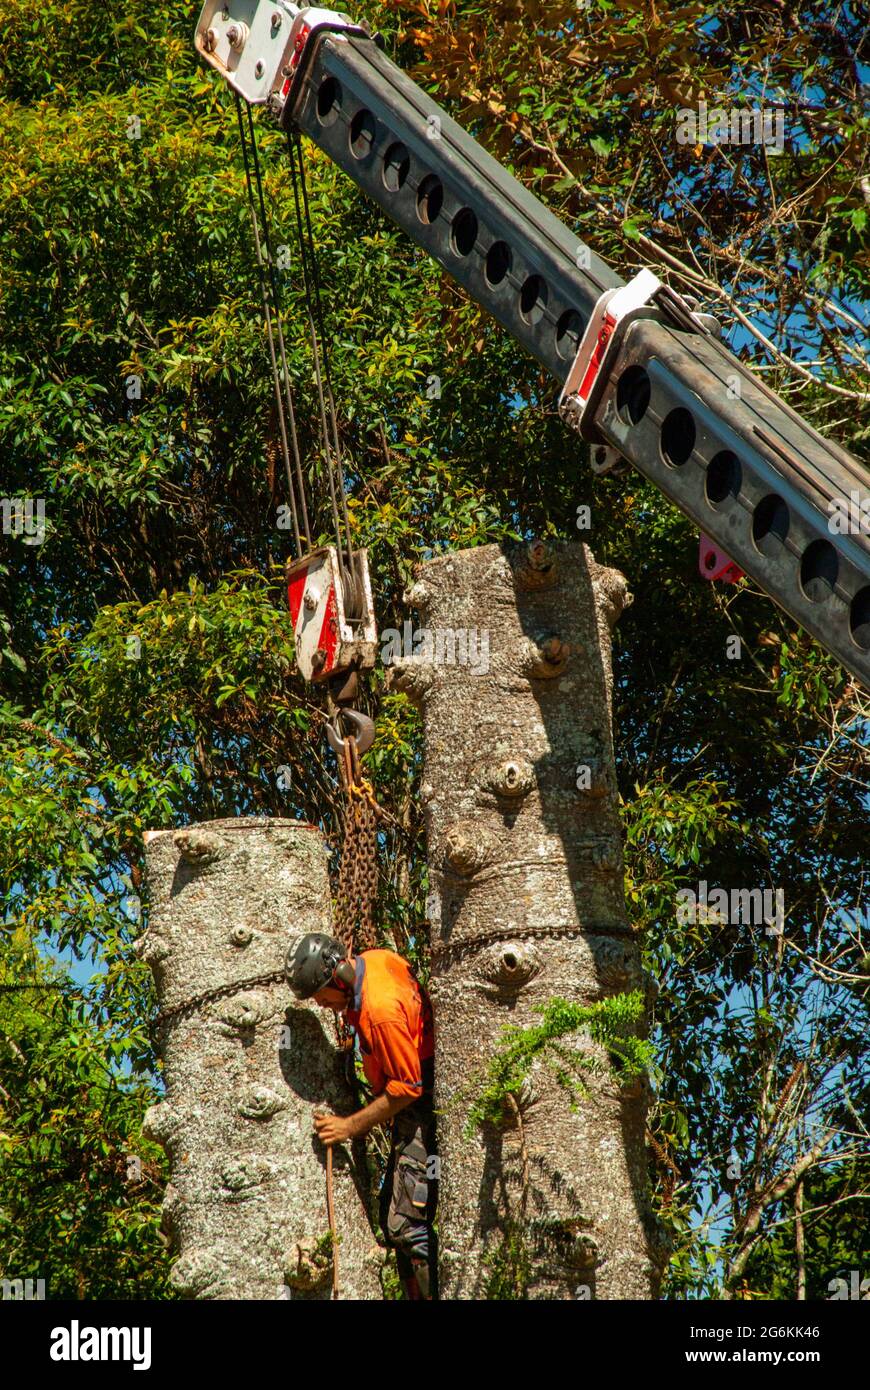 Bunya Pines, Araucaria bidwillii, étant enlevé en raison de la maladie et du danger de chute. Malanda Queensland Australie. Banque D'Images